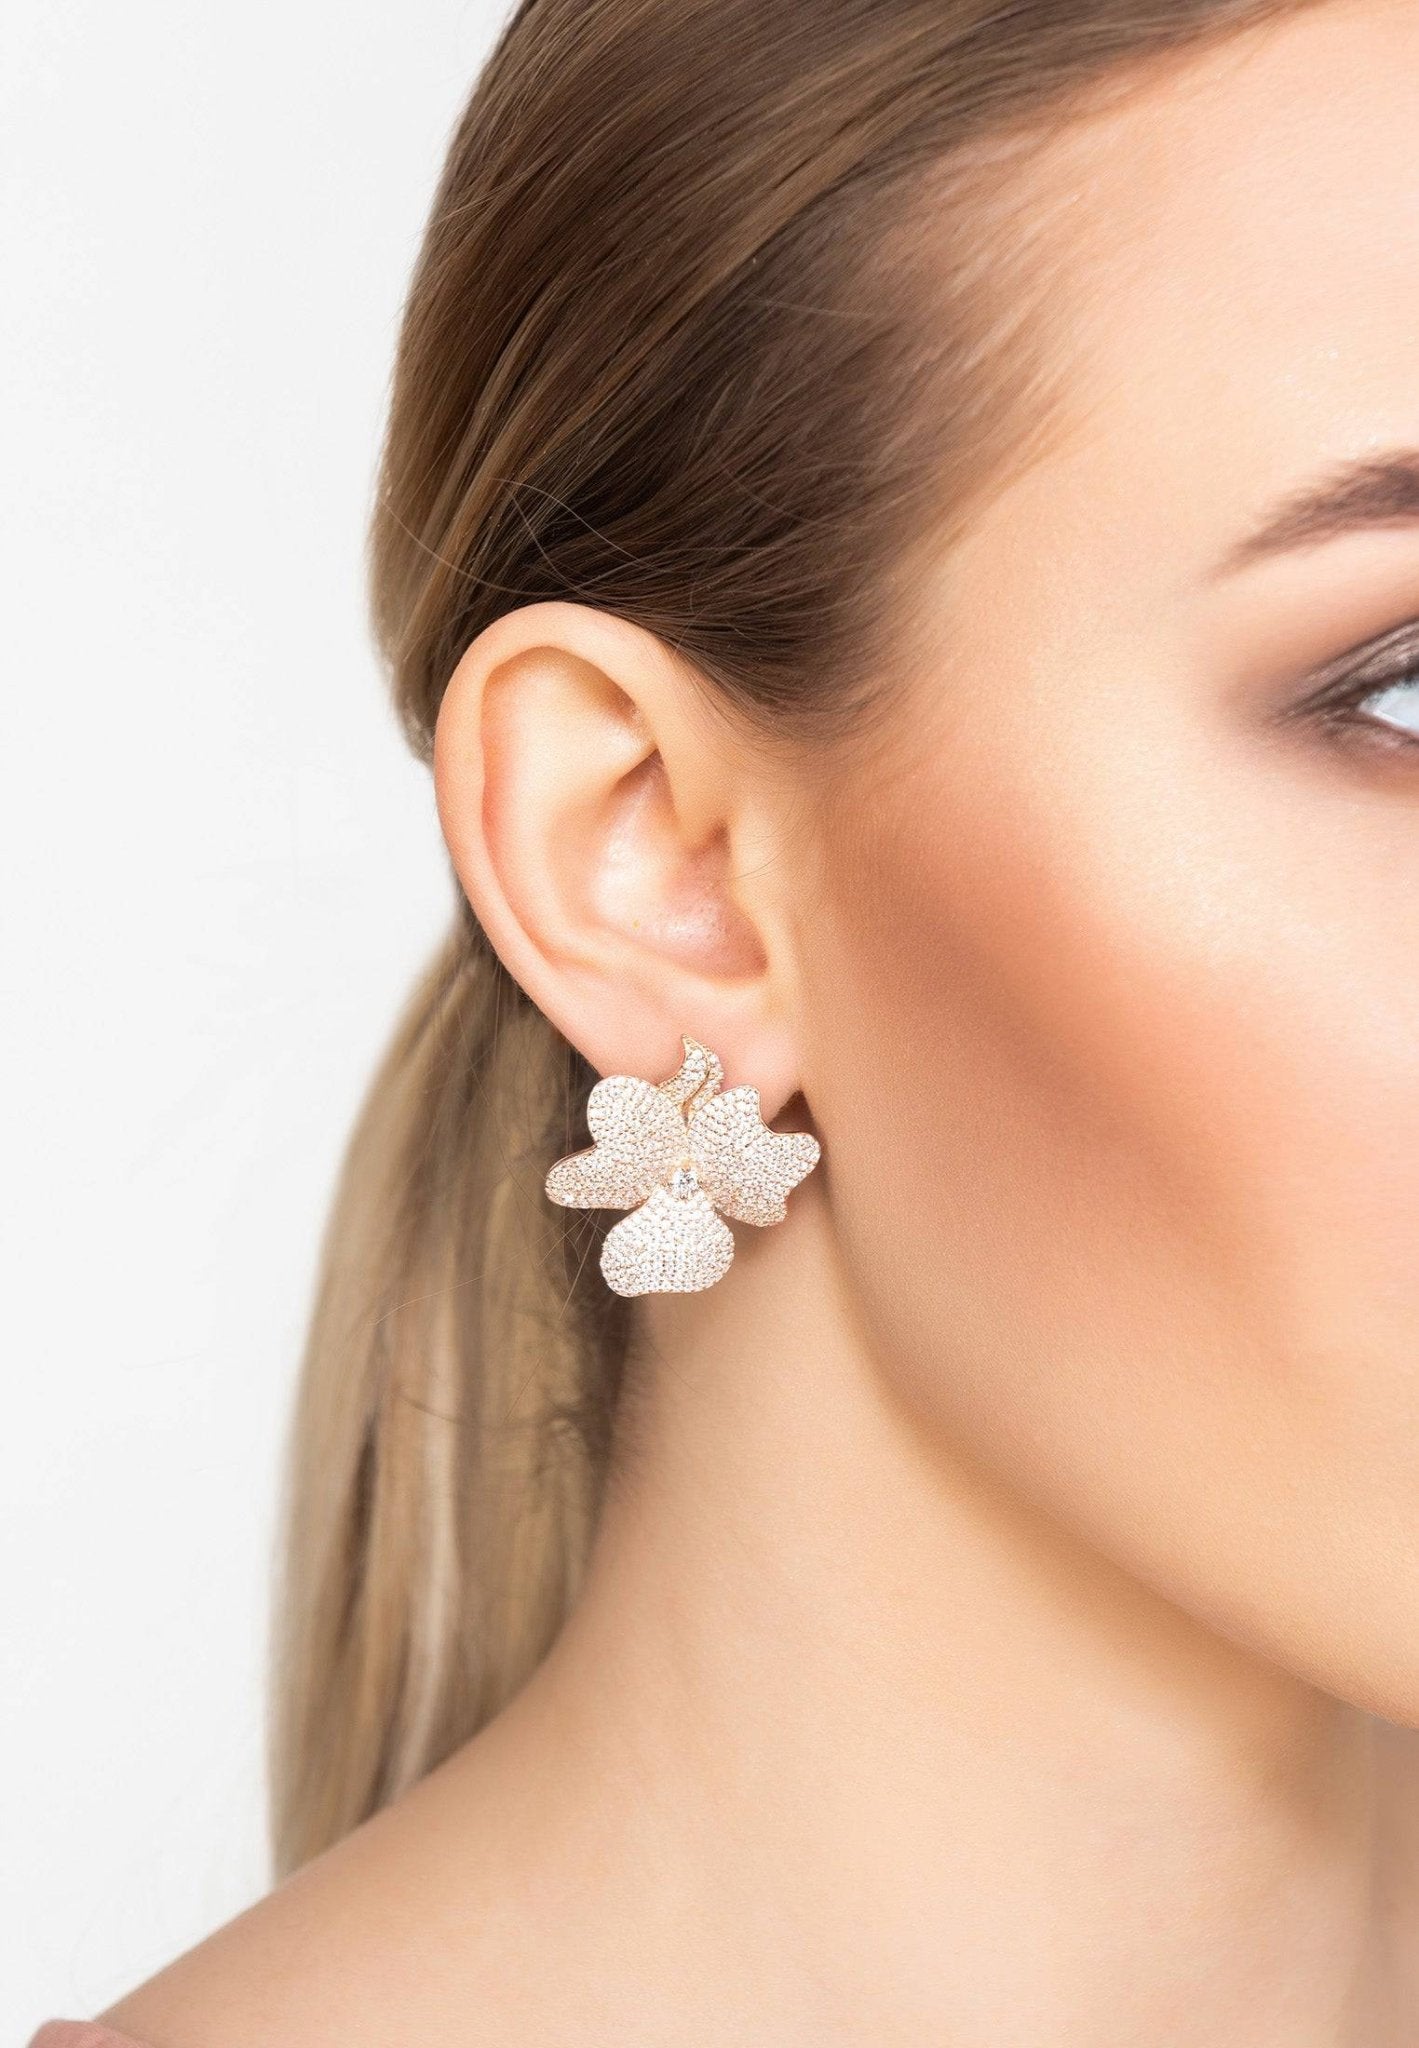 Flower Large Stud Earrings Rose Gold - LATELITA Earrings